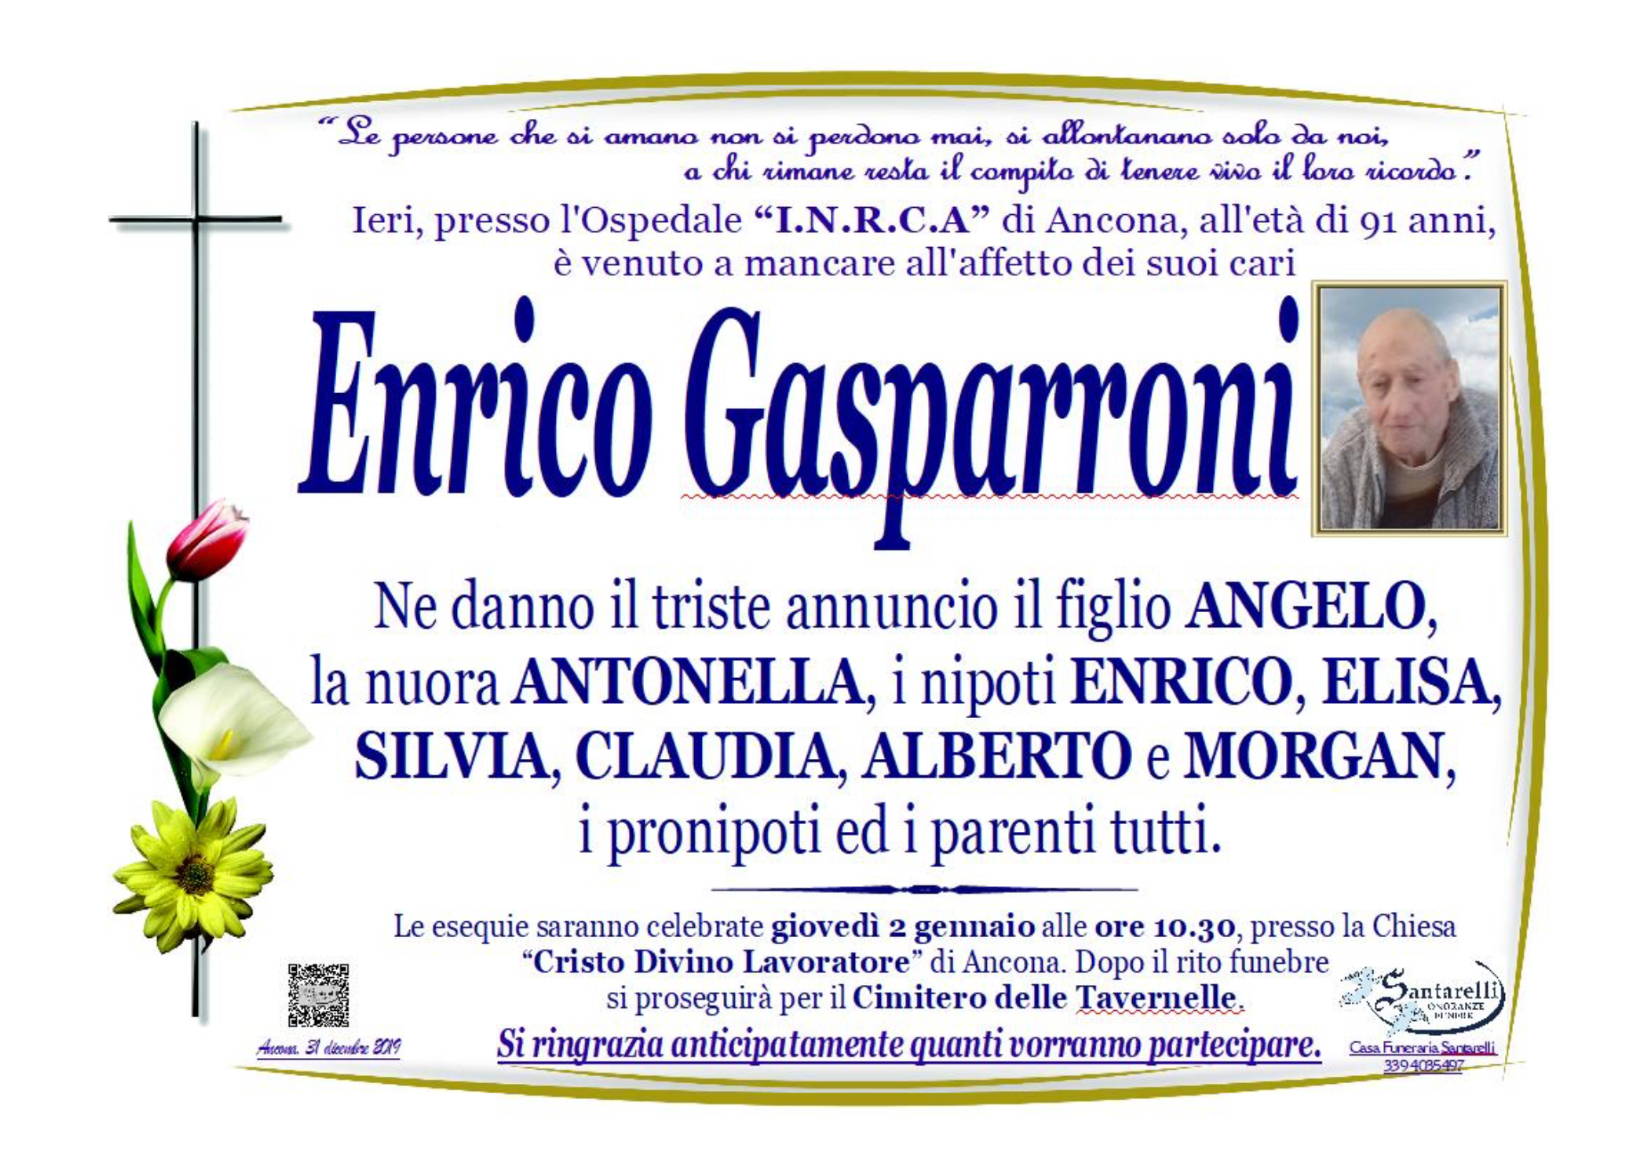 Enrico Gasparroni